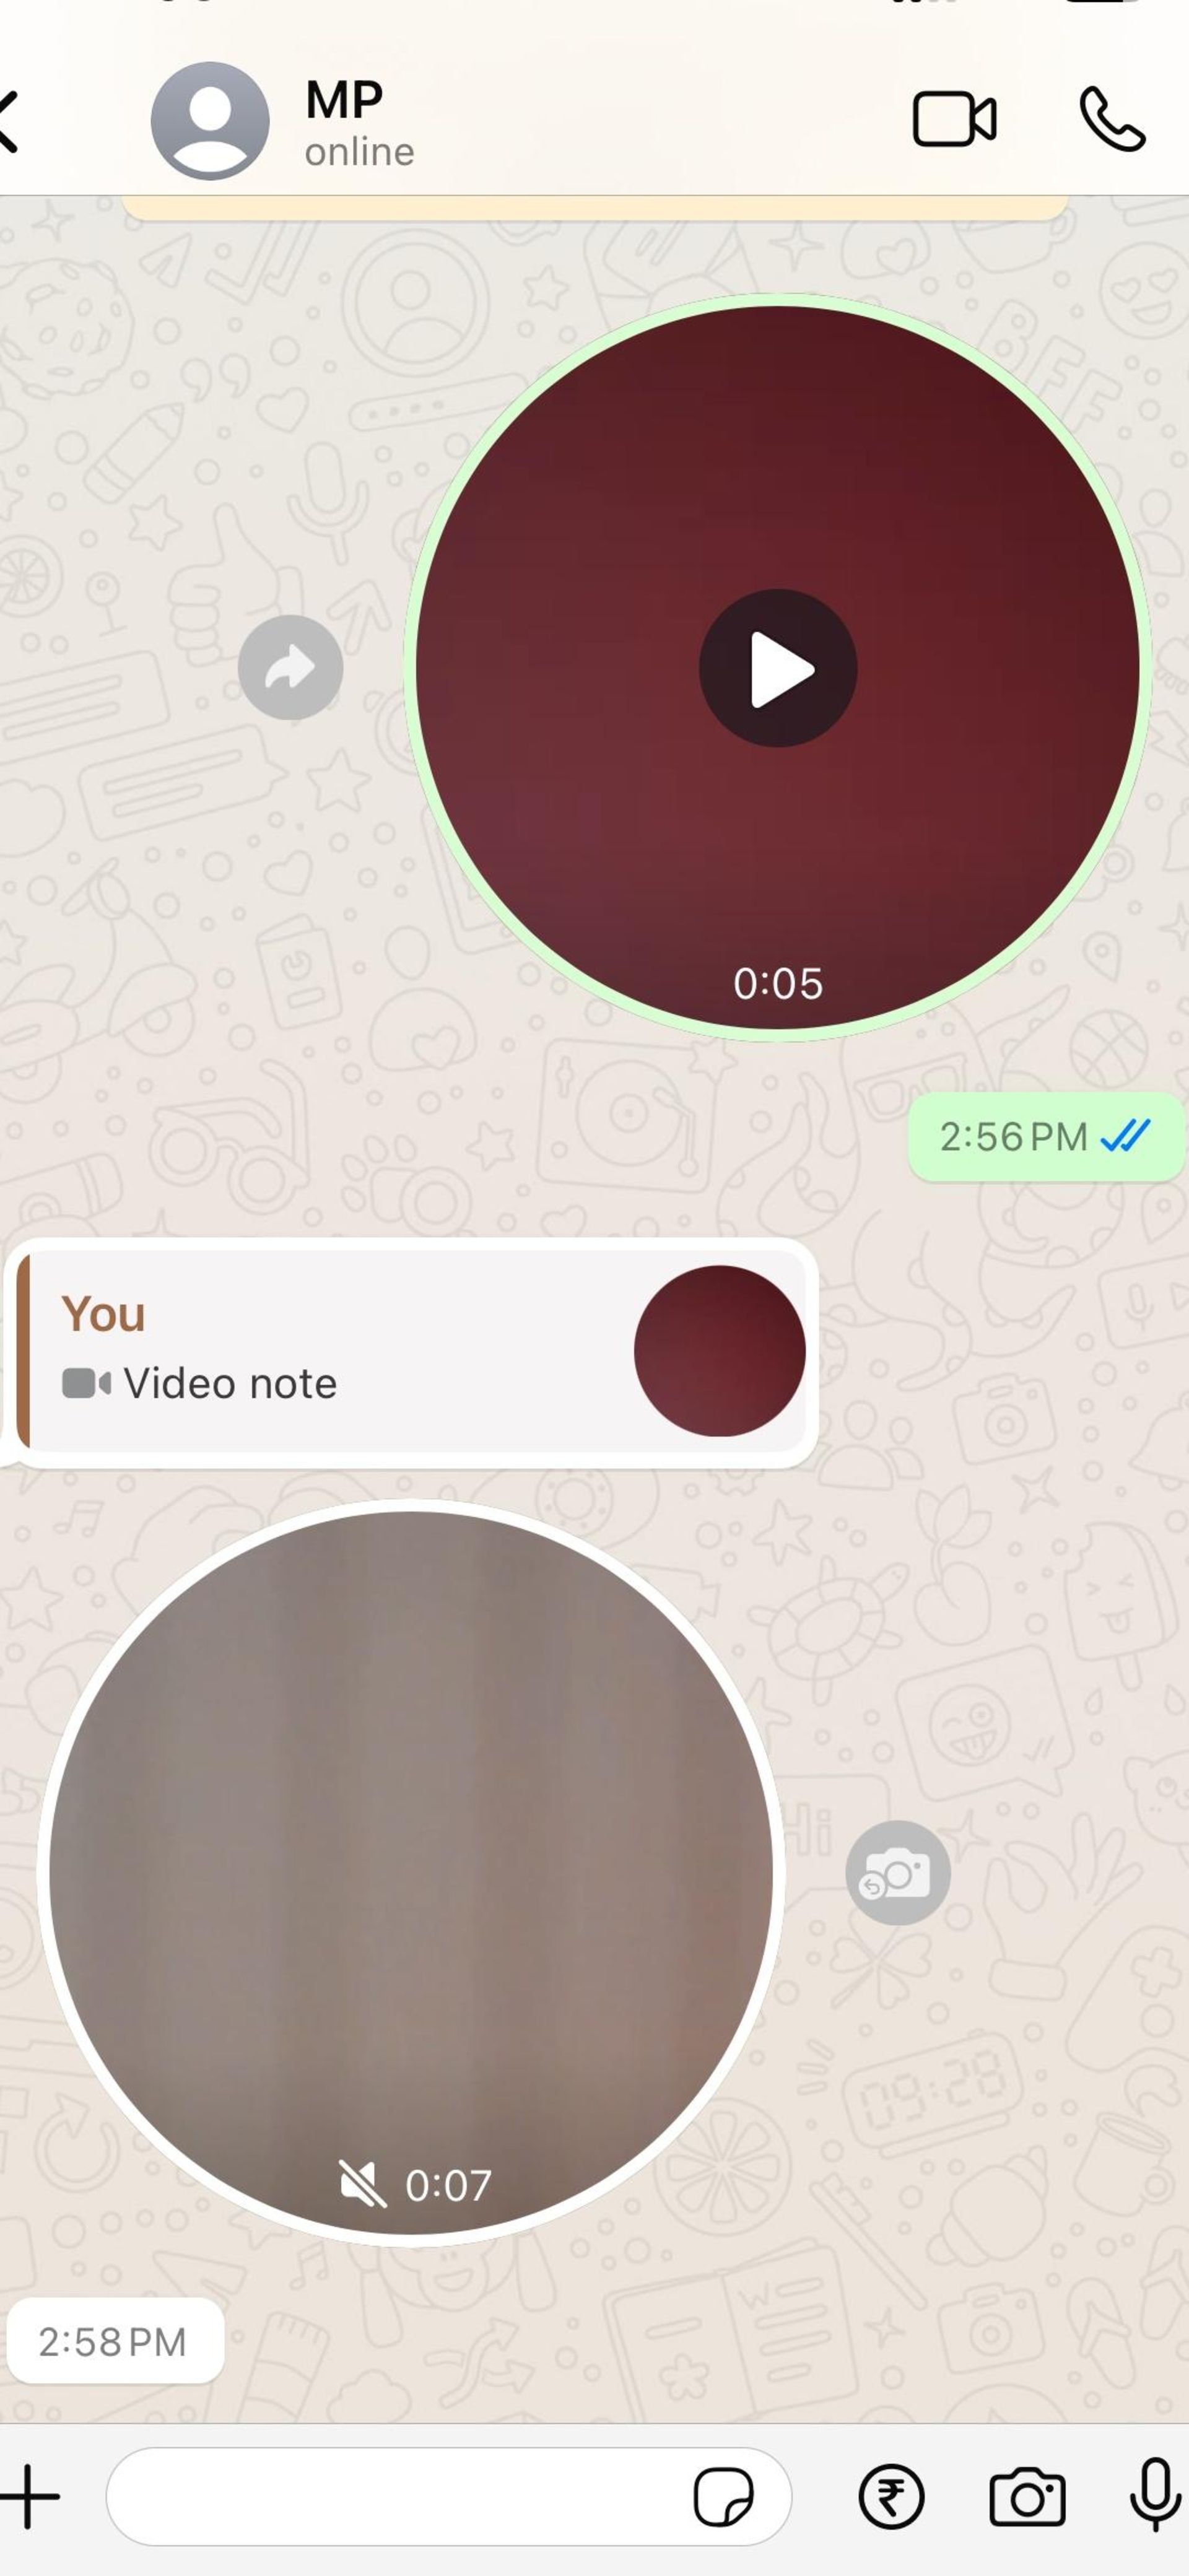 قابلیت ارسال پاسخ سریع به یادداشت های ویدیویی در واتساپ